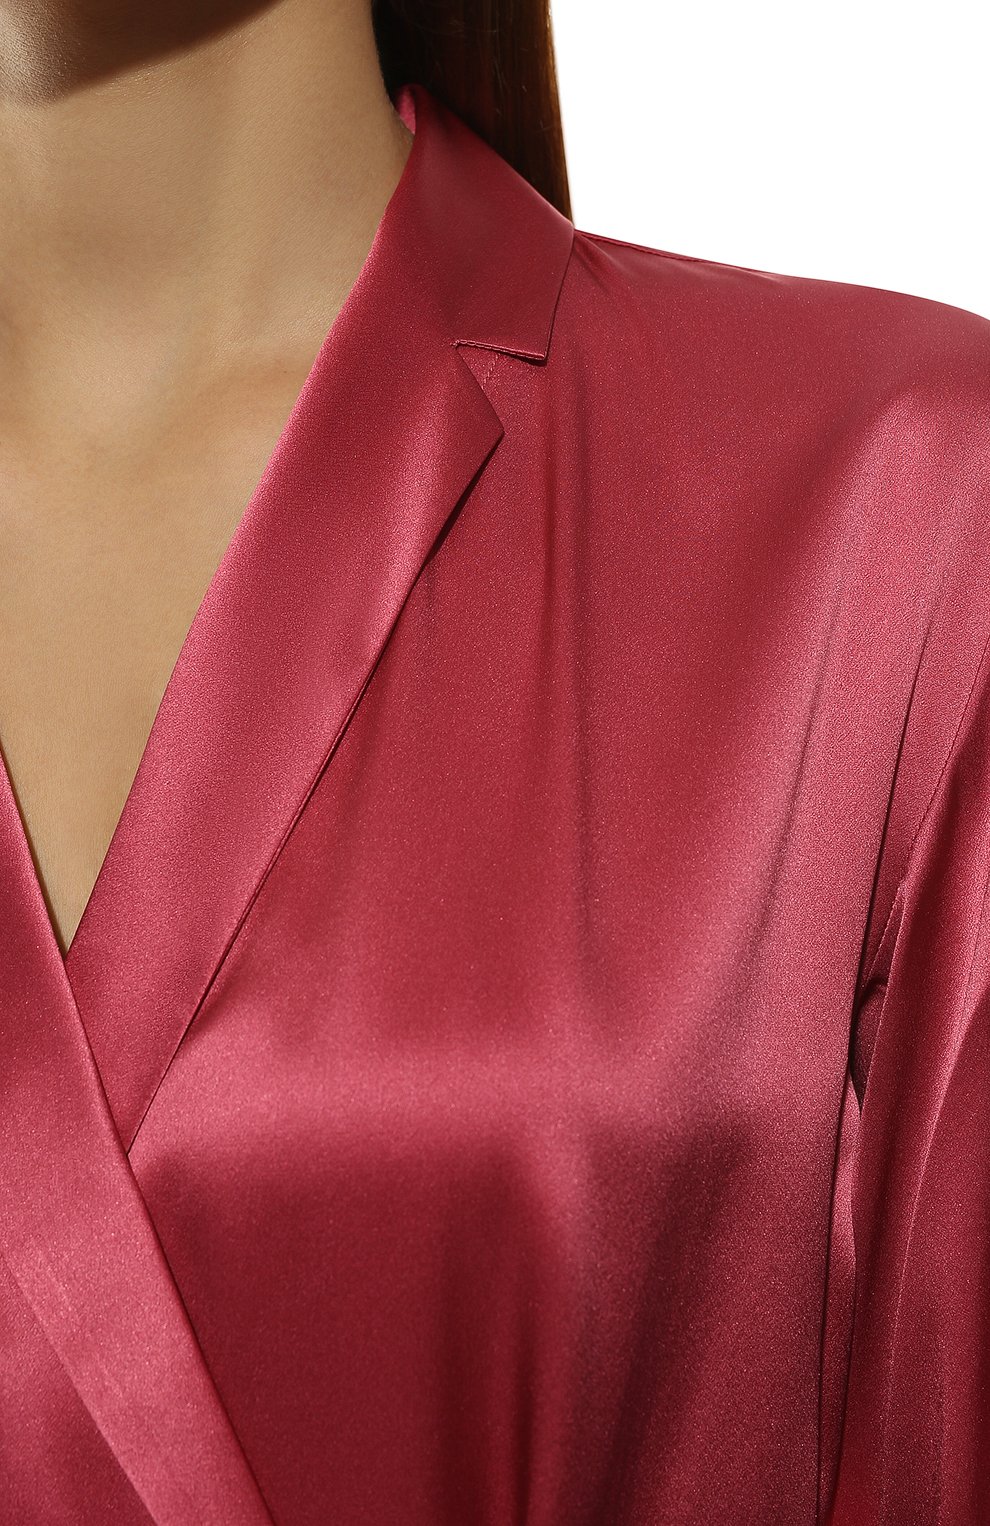 Женский шелковый халат LA PERLA малинового цвета, арт. 0020293/C0 | Фото 5 (Материал внешний: Шелк)